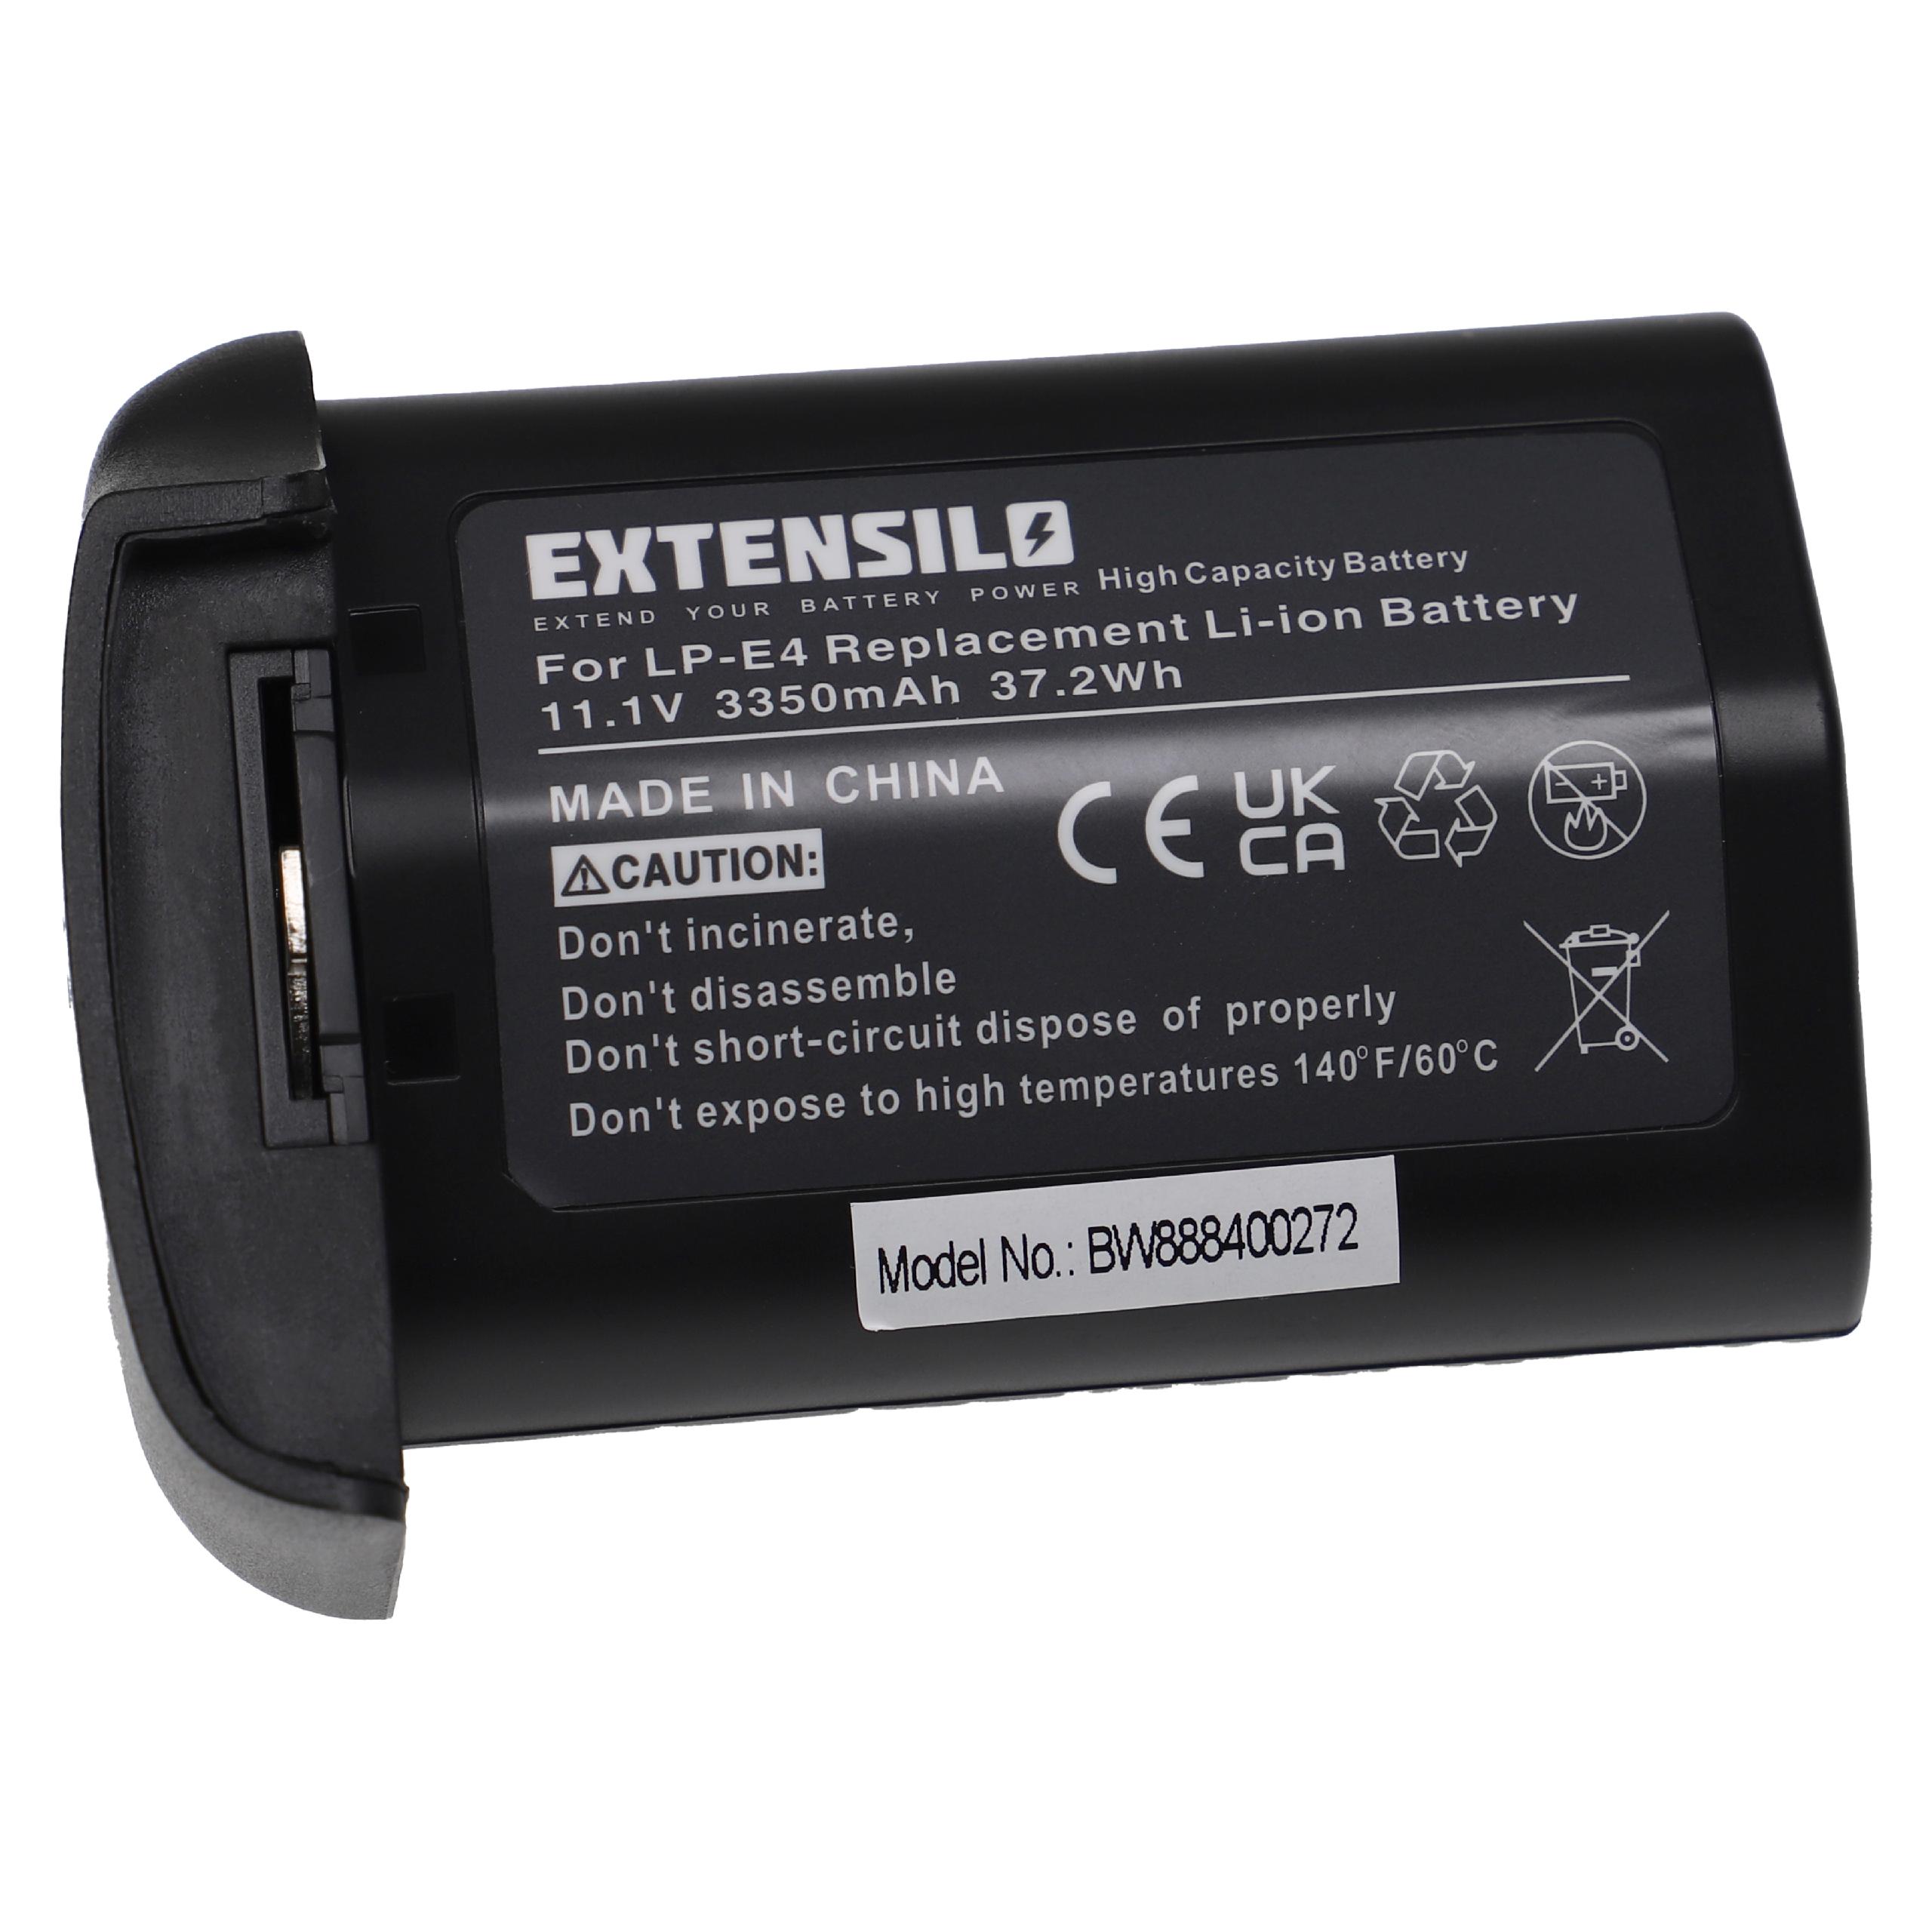 Batterie remplace Canon LP-E4 pour appareil photo - 3350mAh 11,1V Li-ion